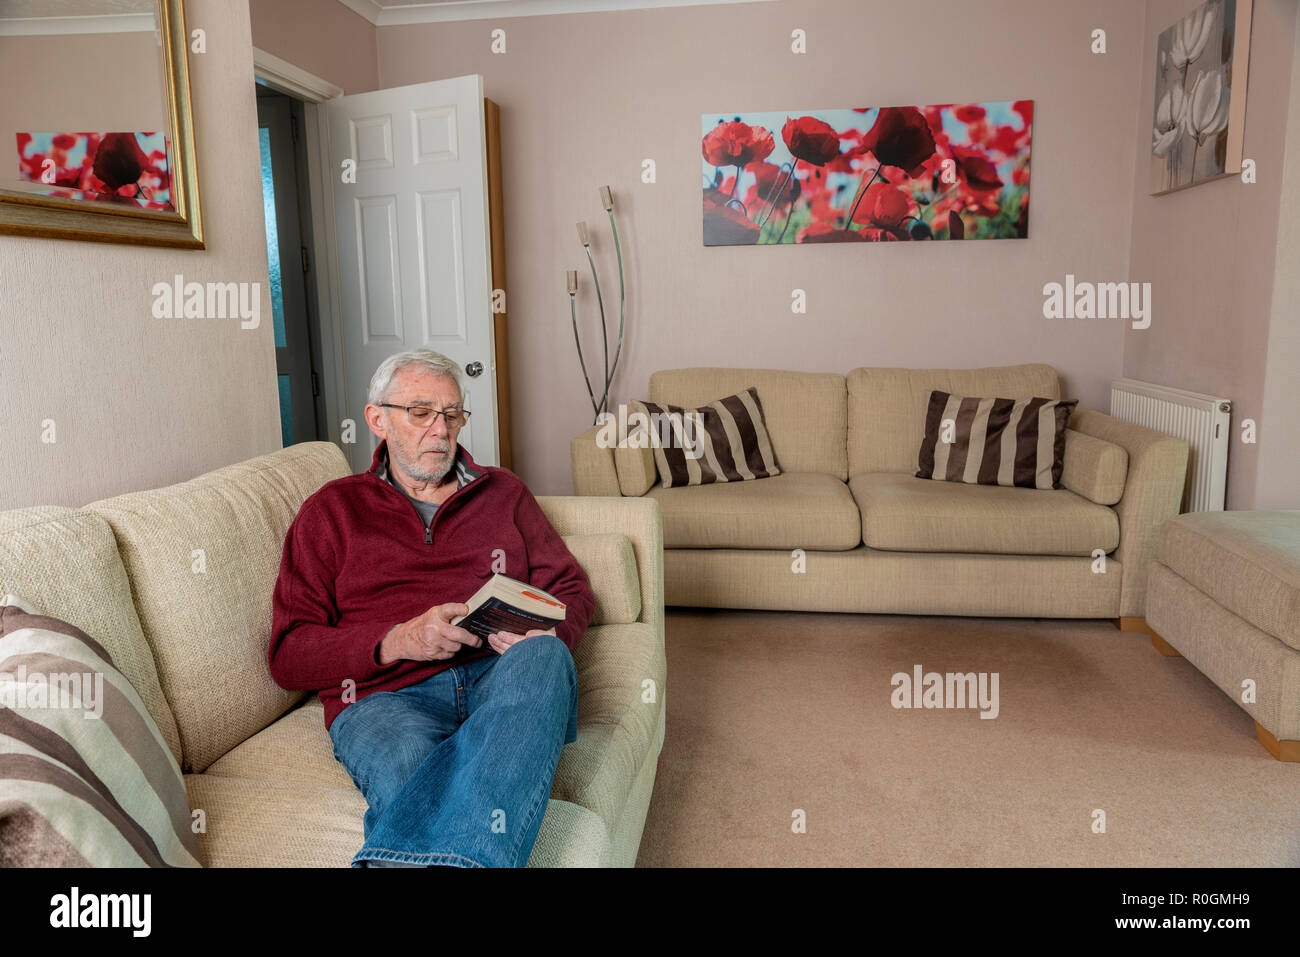 Ältere Menschen allein Sitzen auf einem Sofa, Trauer nach dem Verlust eines geliebten Menschen. Traurige Einsamkeit und Traurigkeit. Stockfoto